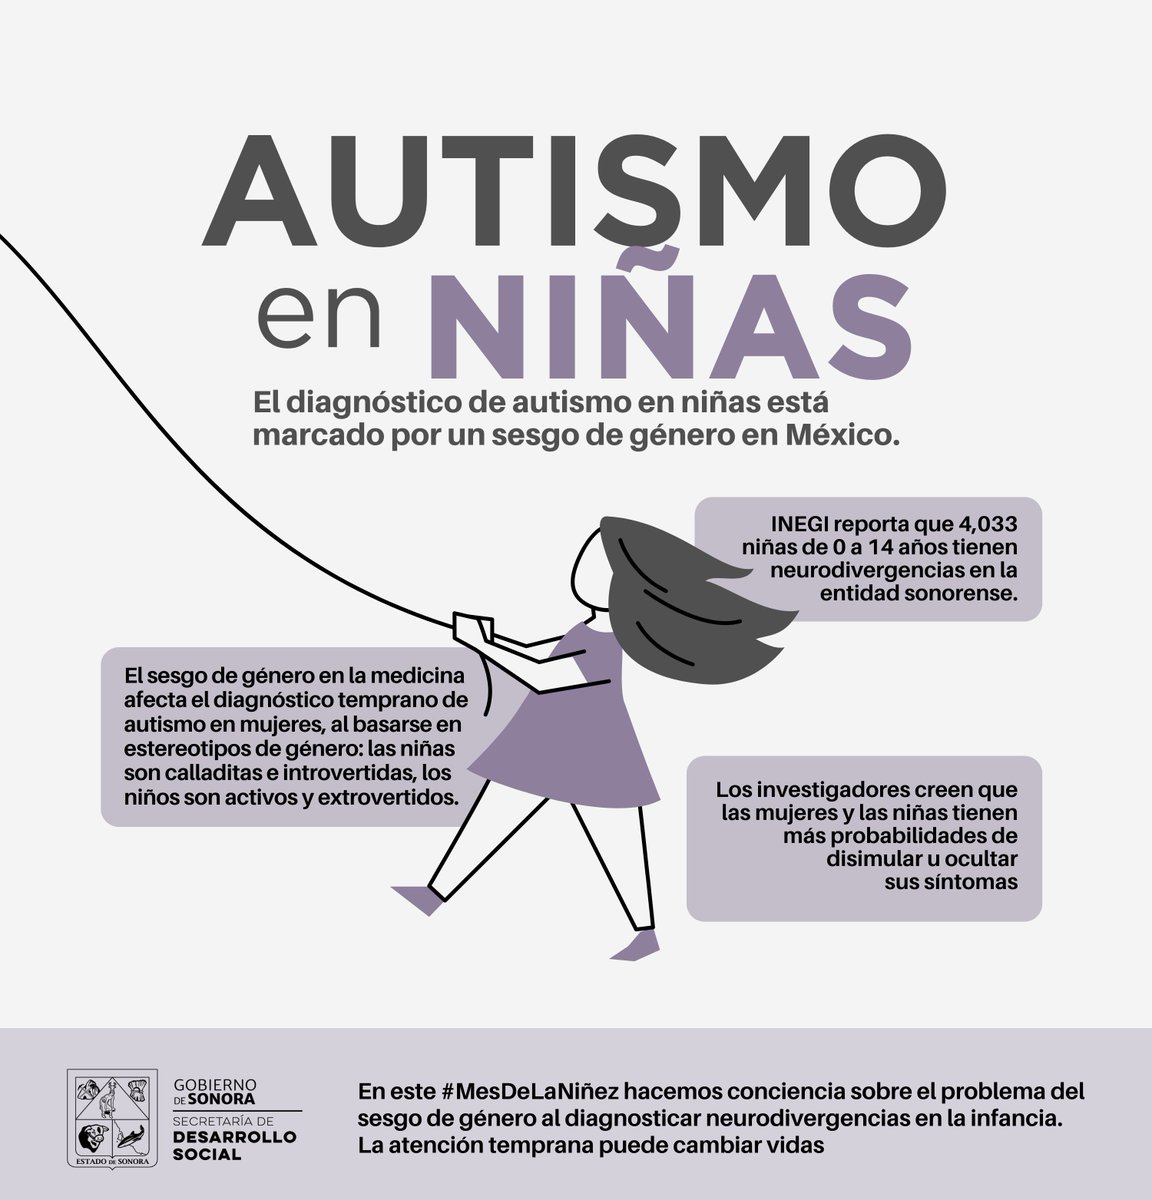 En este #MesDeLaNiñez hacemos conciencia sobre el problema del sesgo de género al diagnosticar neurodivergencias en la infancia. La atención temprana puede cambiar vidas 💜🫂